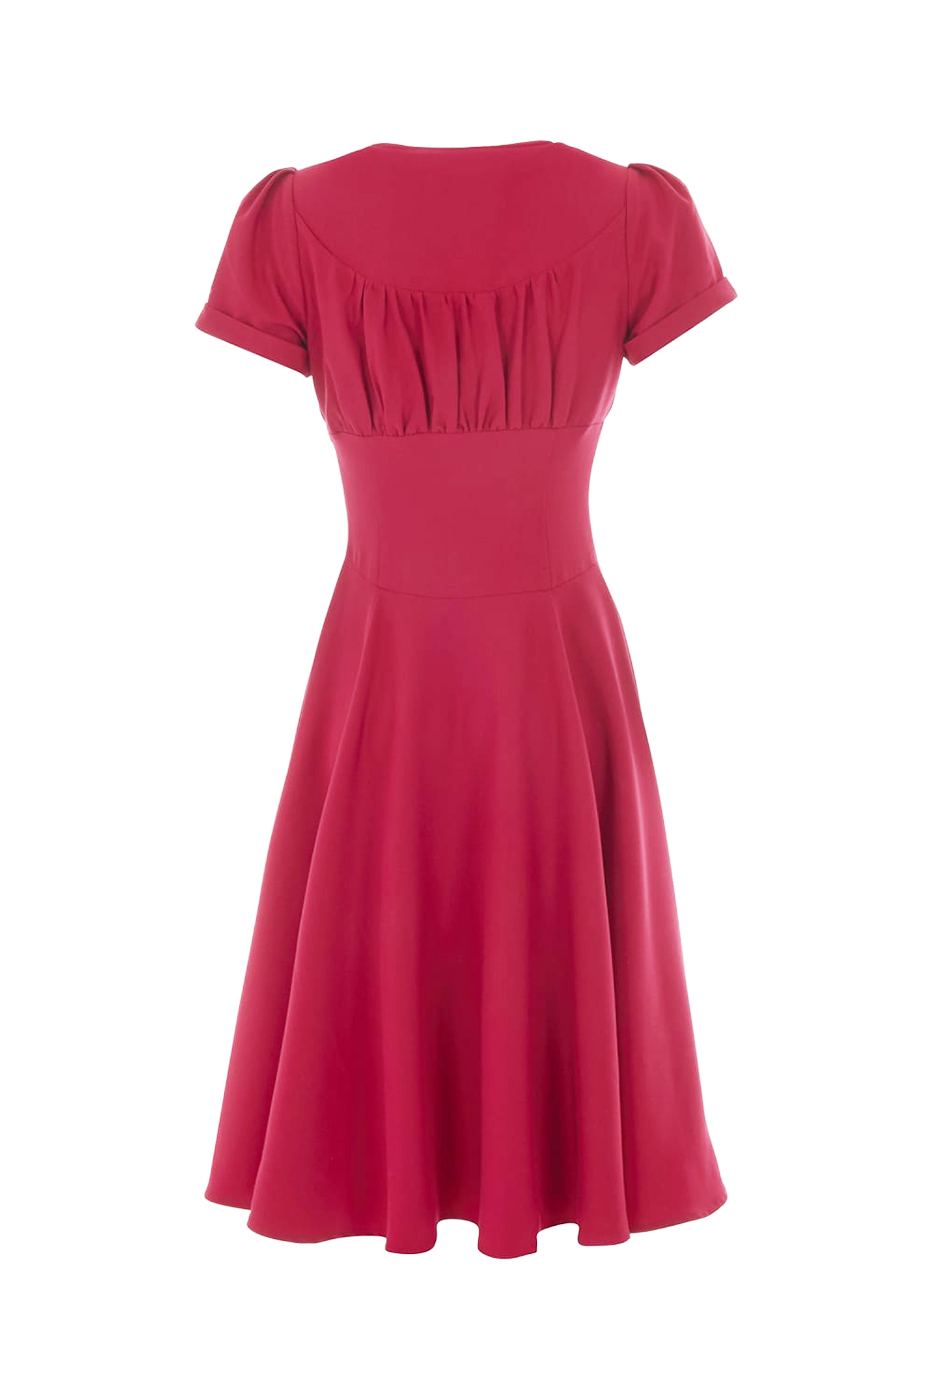 Nadine Tee Kleid in romantischem rot Gr. 38